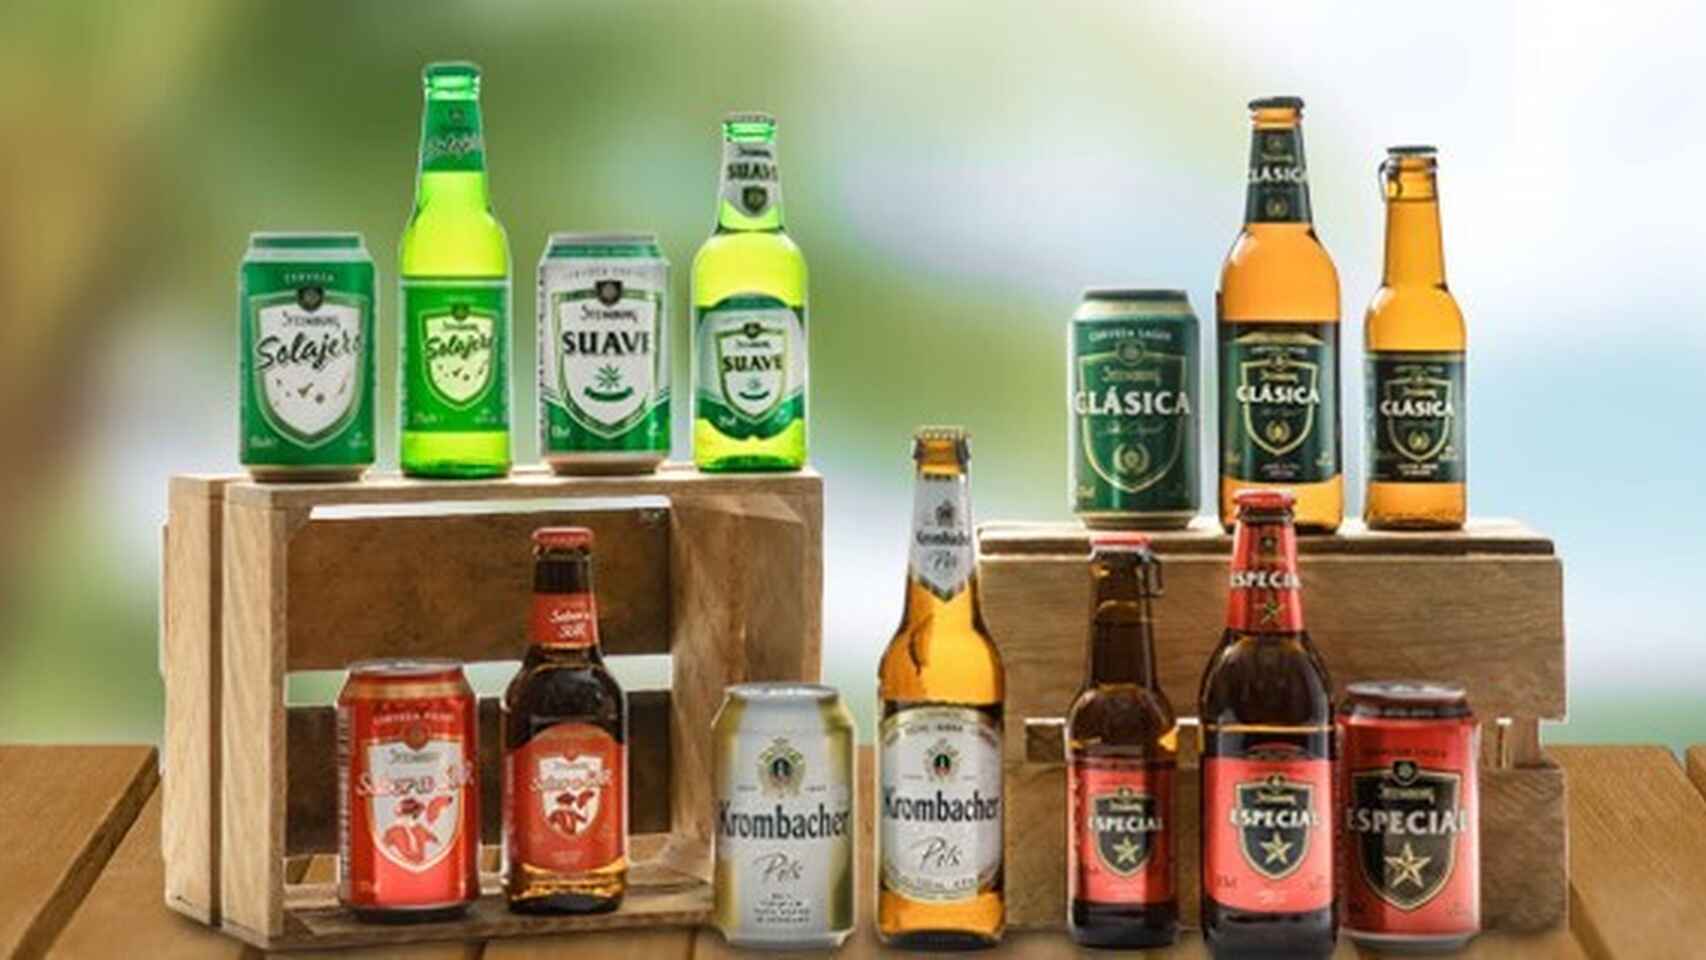 El fabricante de la cerveza Steinburg de Mercadona disparó sus ventas y beneficio en plena Covid